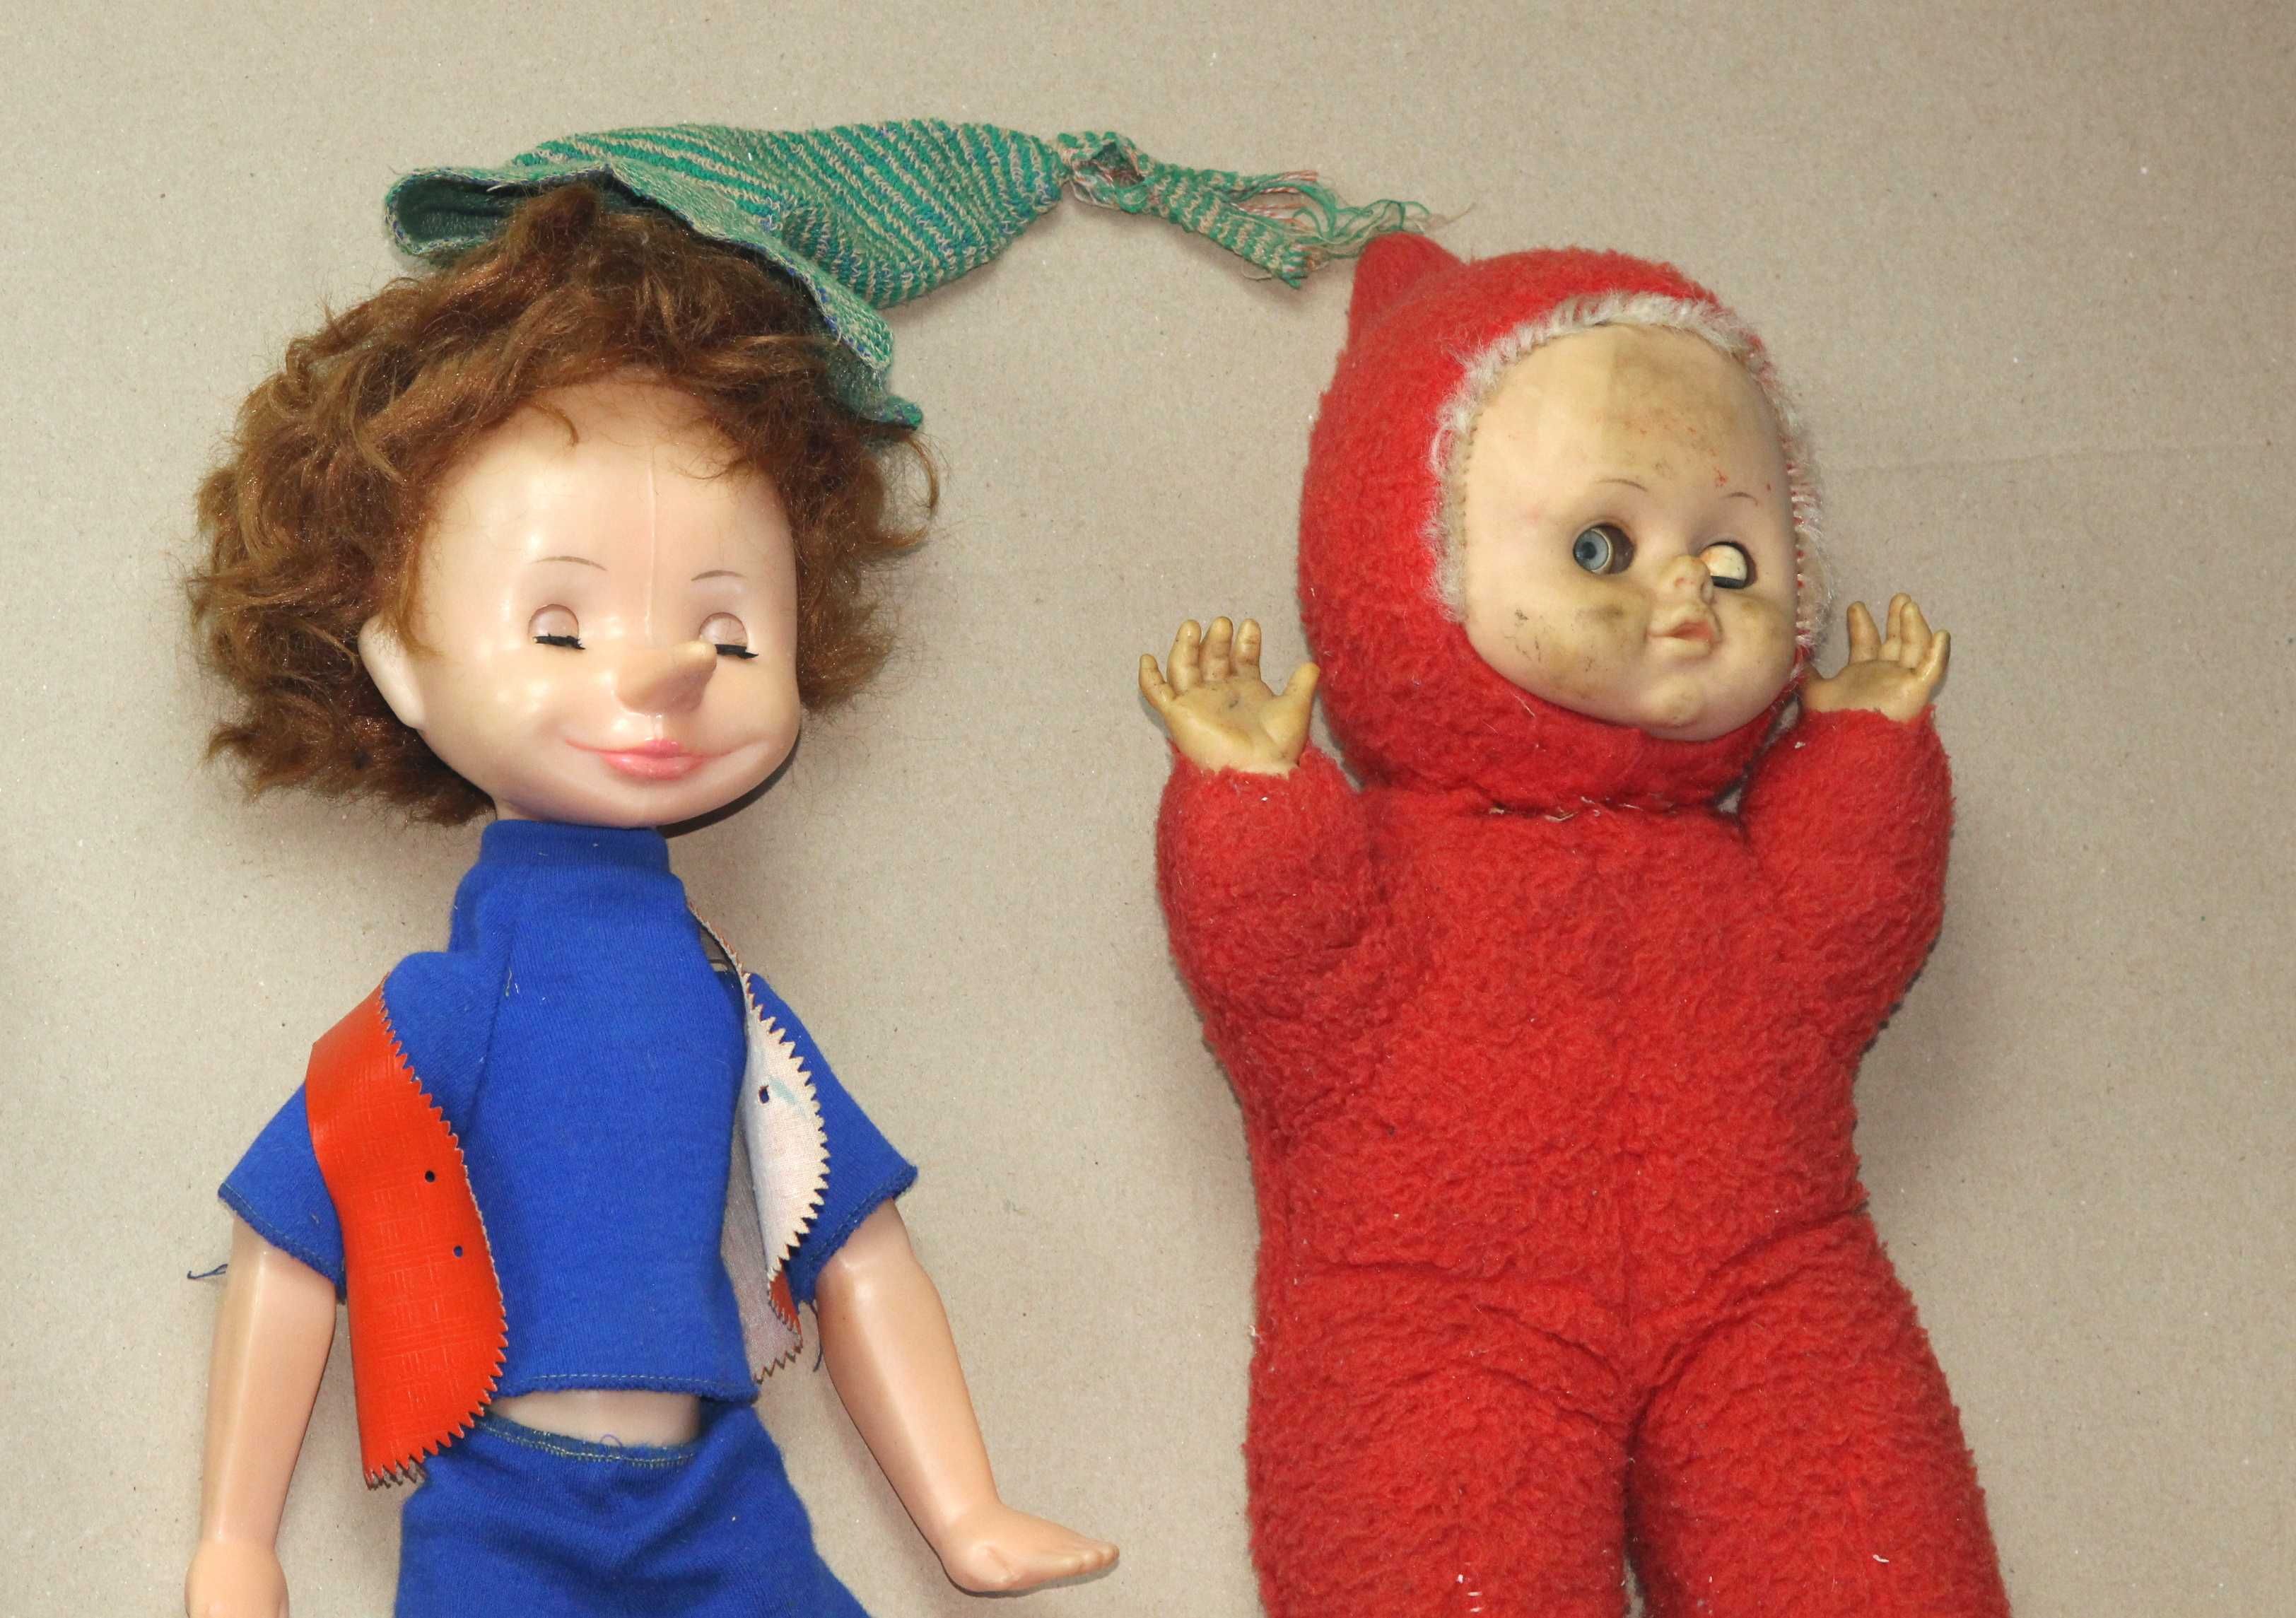 Куклы Игрушки Буратино  (16 штук)